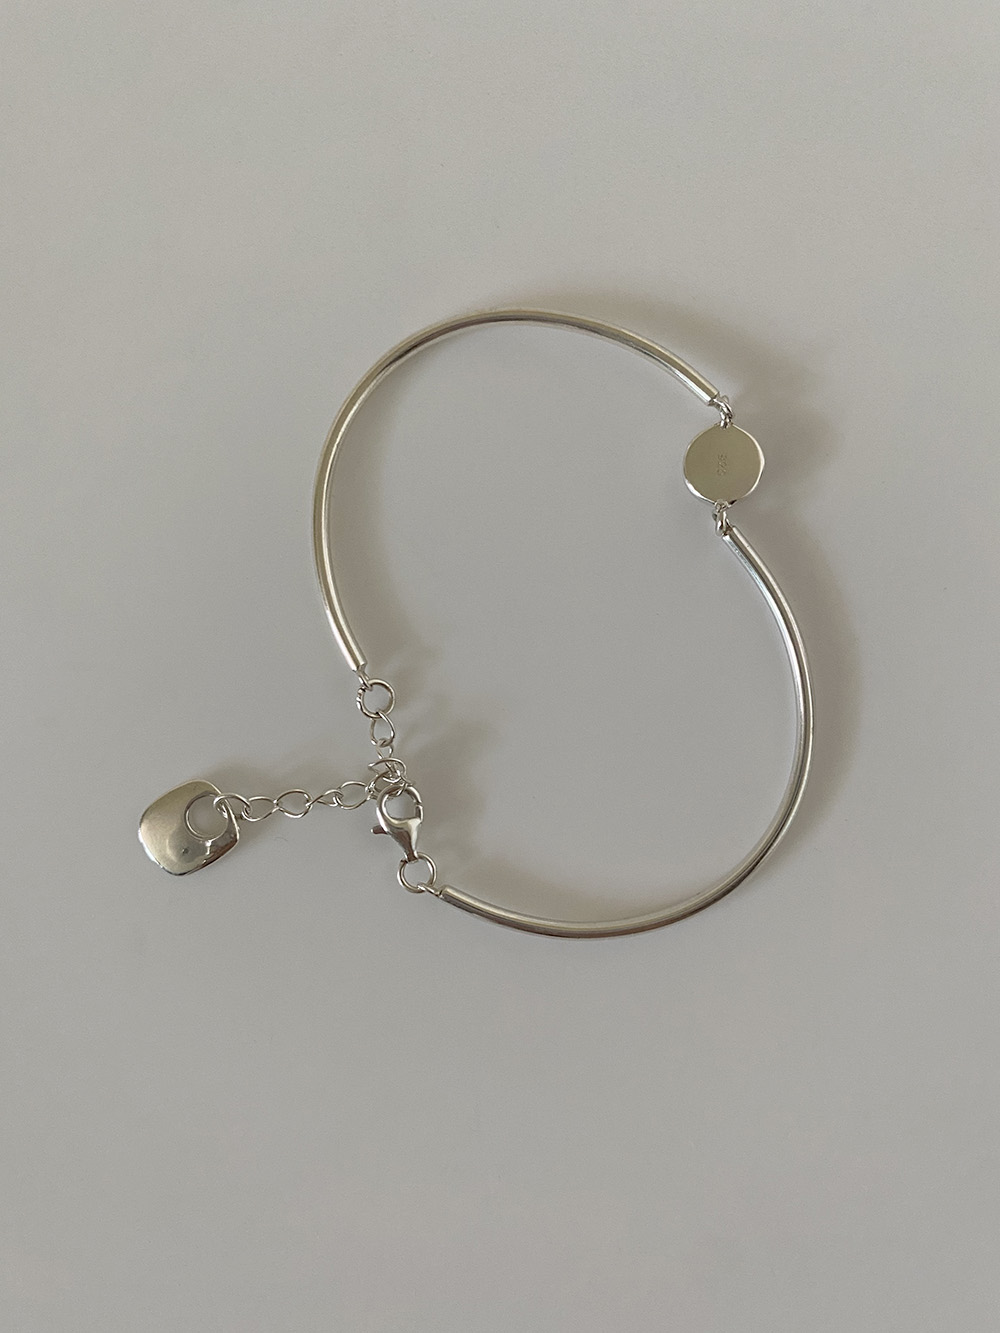 [92.5 silver] posy bracelet